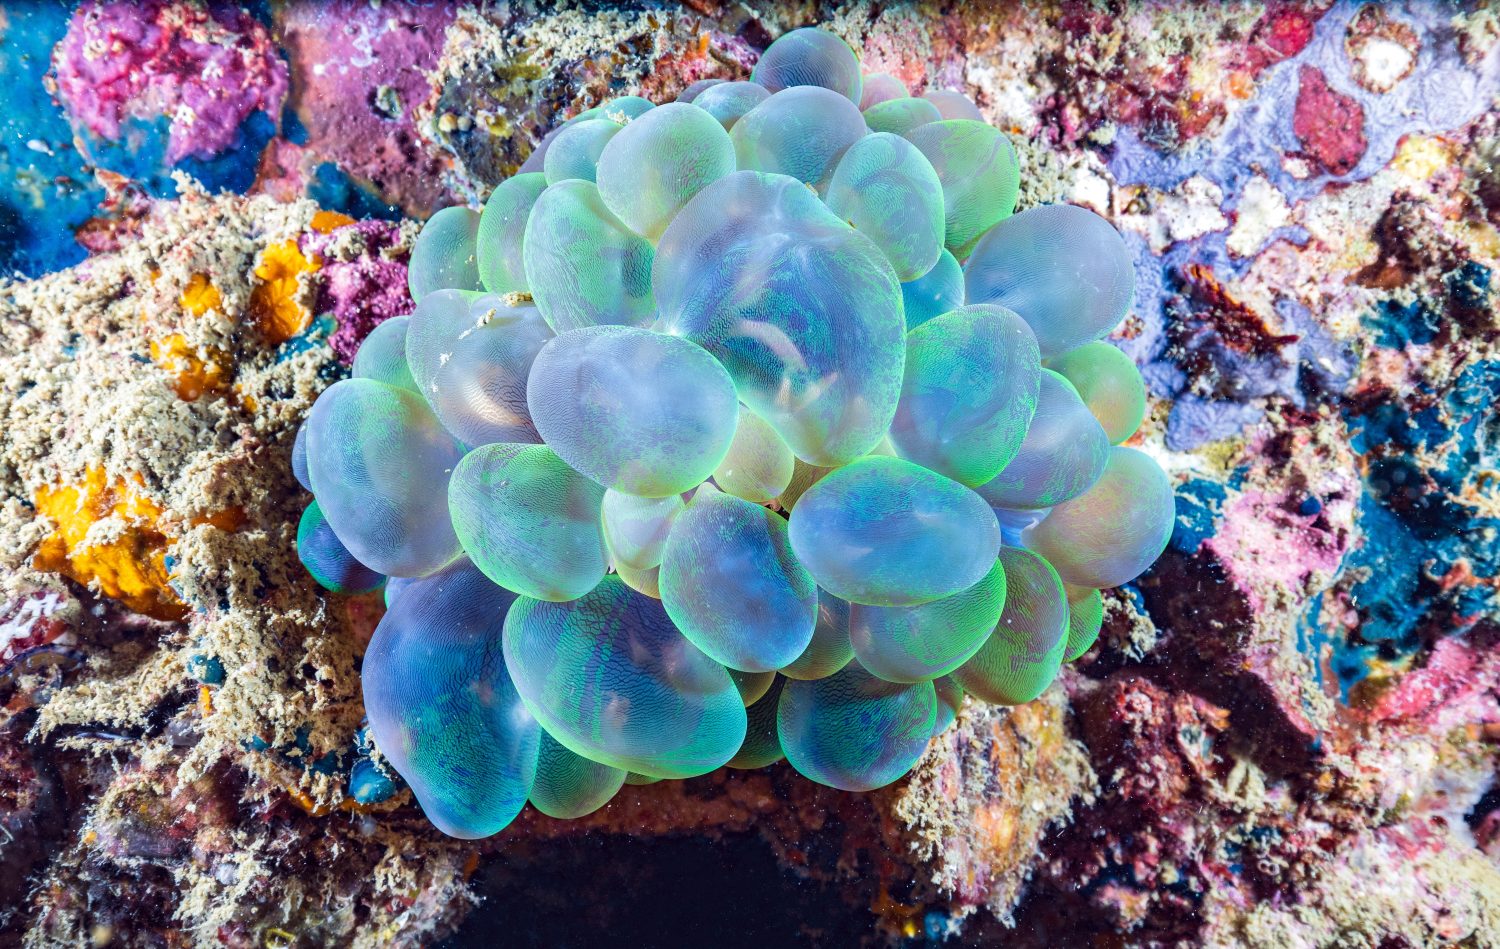 Plerogyra sinuosa è una specie gelatinosa del phylum Cnidaria.  Viene comunemente chiamato “corallo a bolle” per il suo aspetto frizzante.  sulla barriera corallina delle Isole Phi Phi, Thailandia